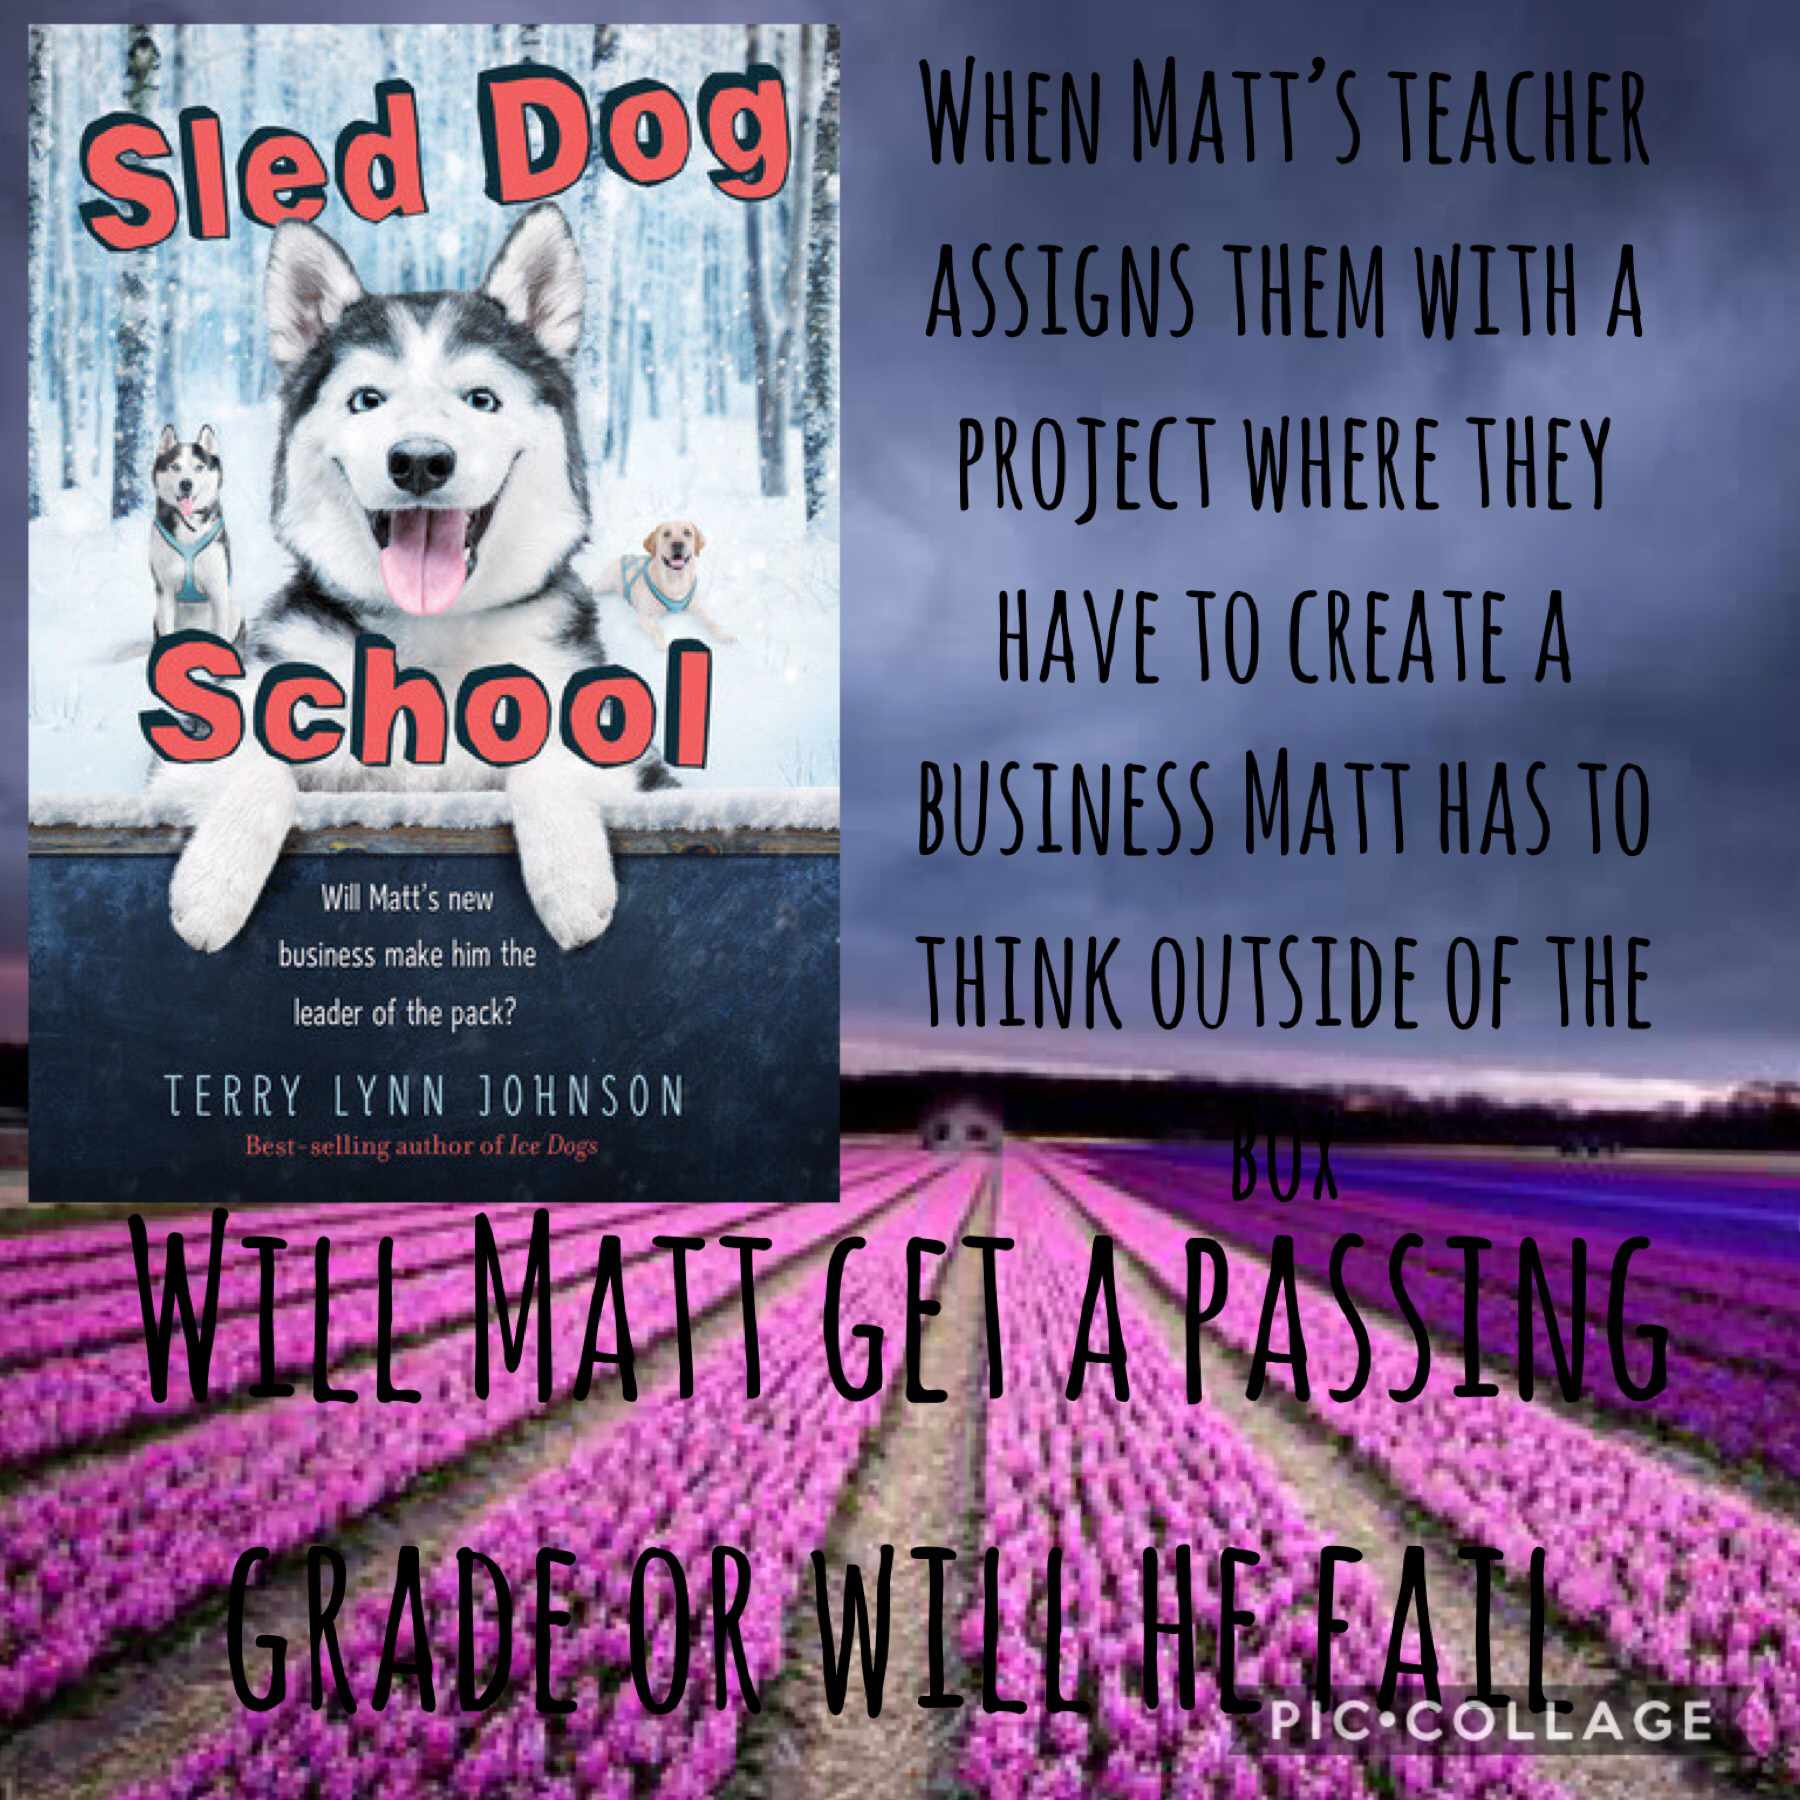 Sled dog school